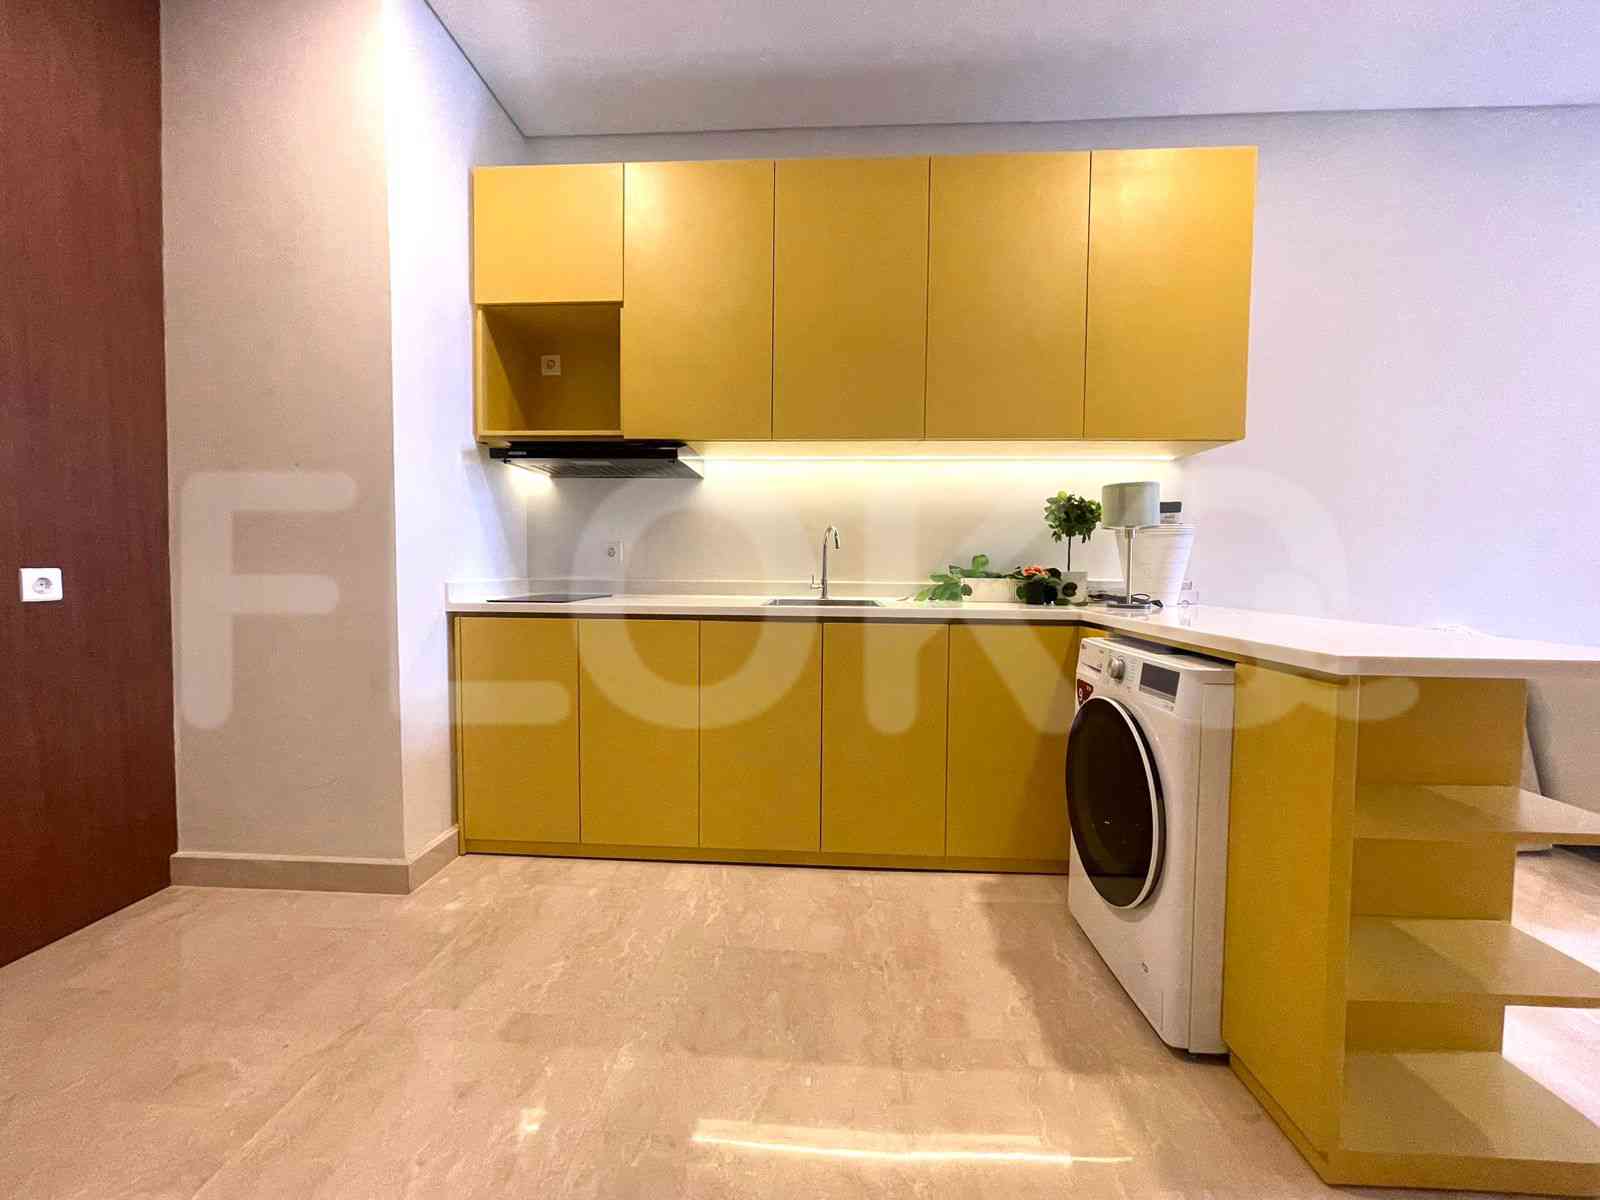 2 Bedroom on 15th Floor for Rent in Sudirman Suites Jakarta - fsu806 3